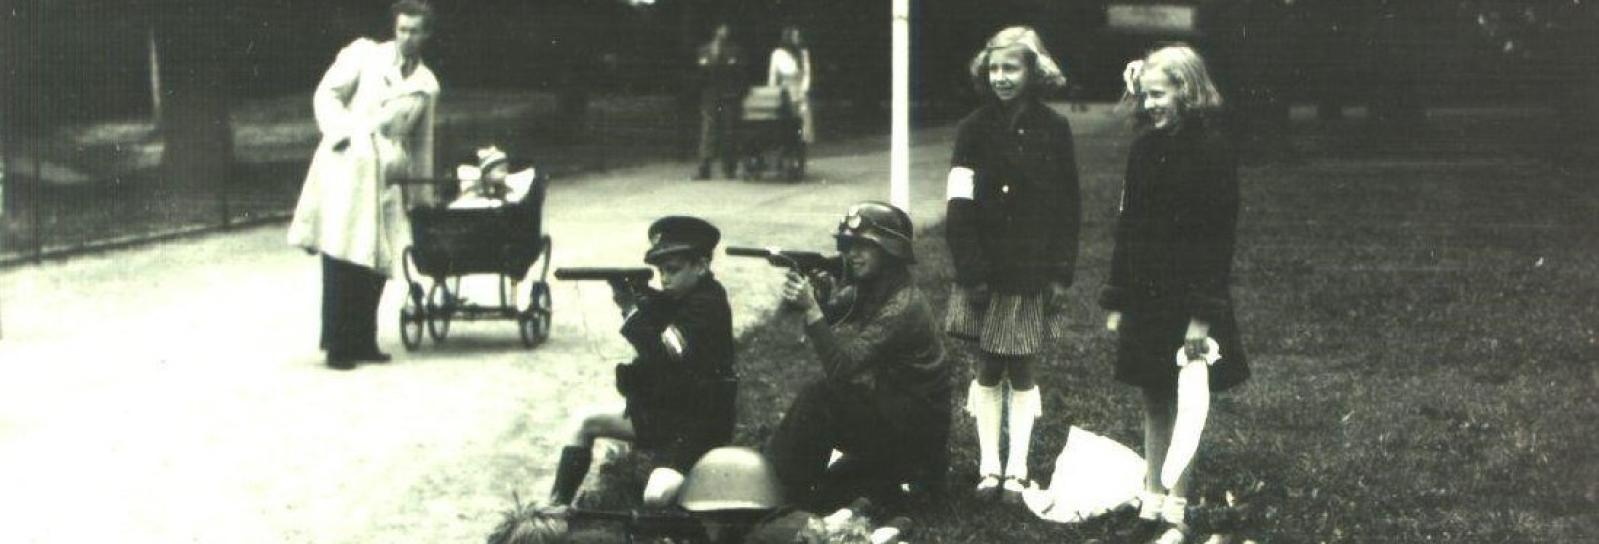 Børn der leger frihedskæmpere